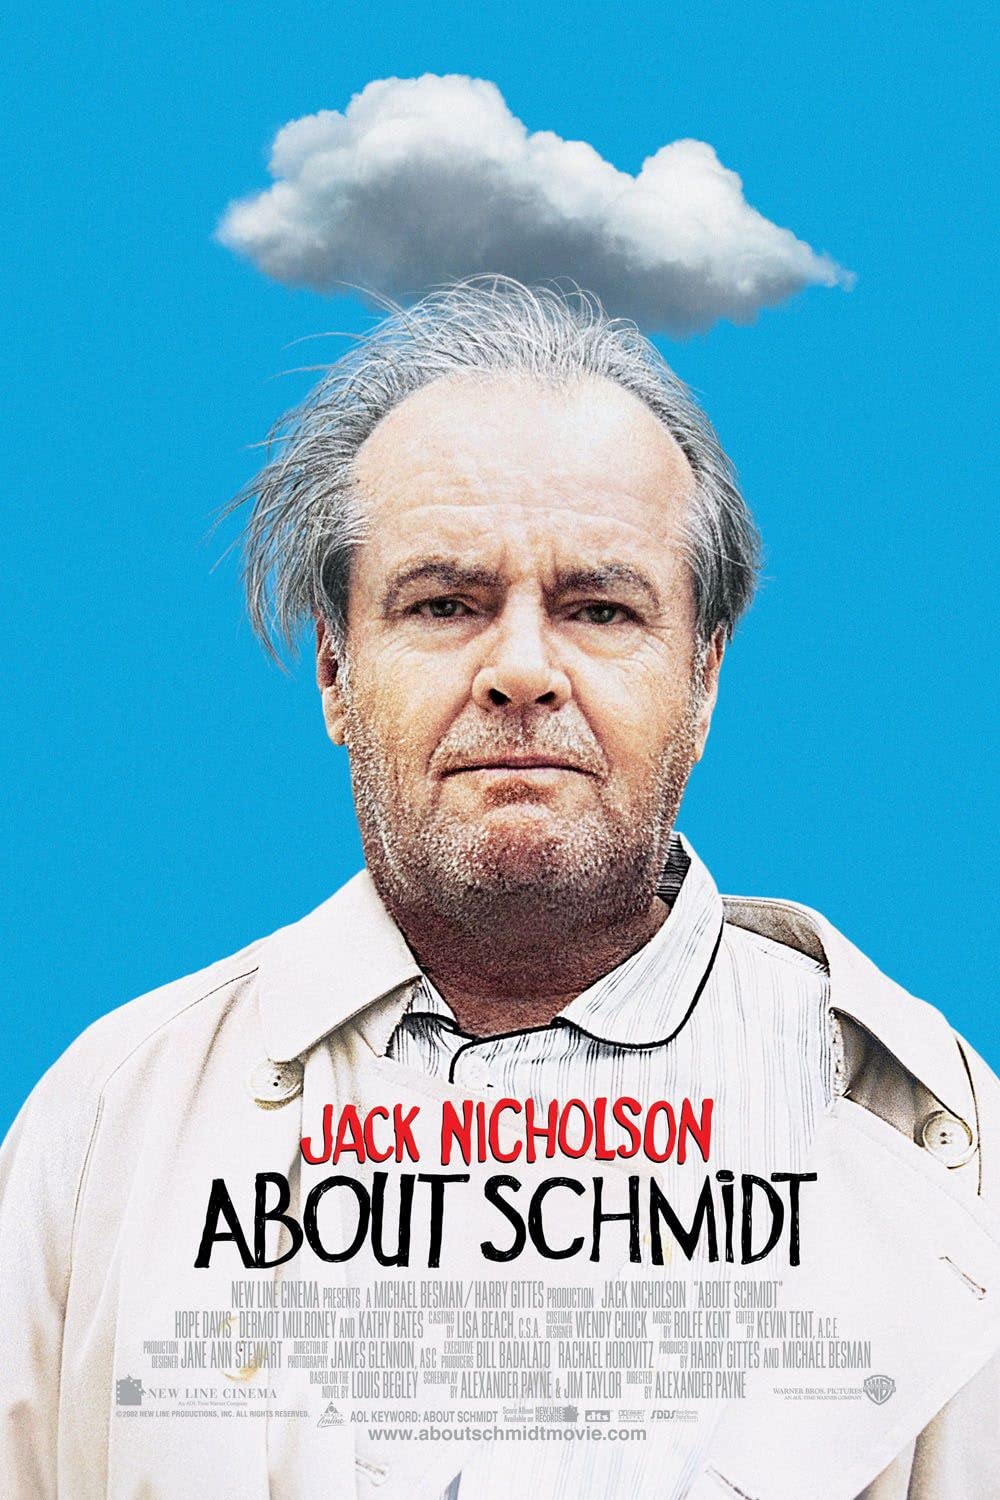 Filmbeschreibung zu About Schmidt